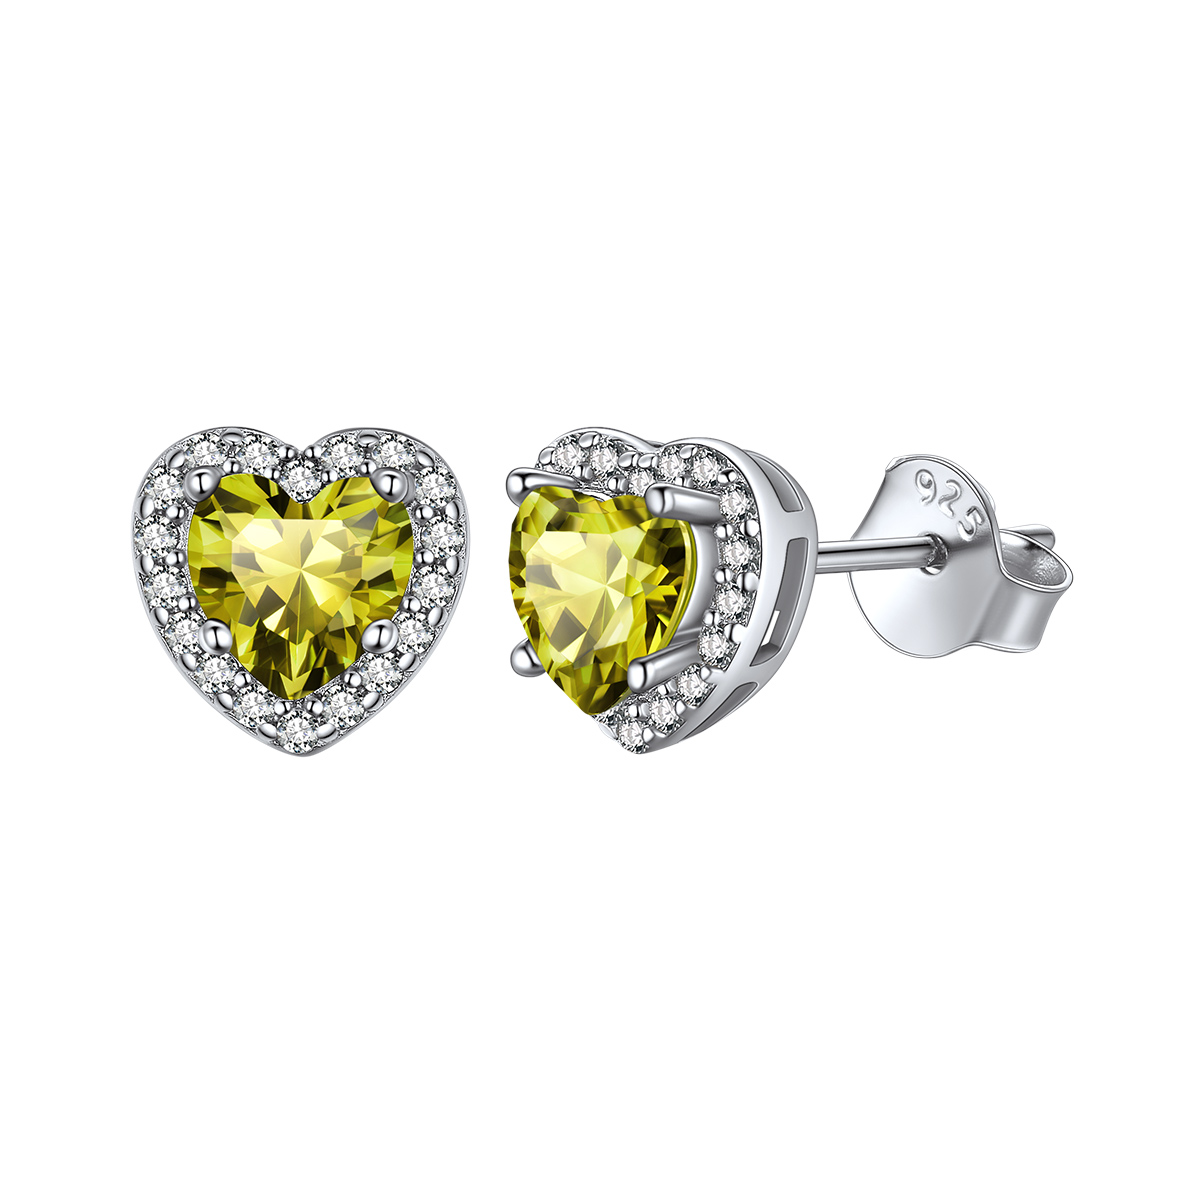 ChicSilver Halo Birthstone Stud Earrings For Women 925 Sterling Silver earrings